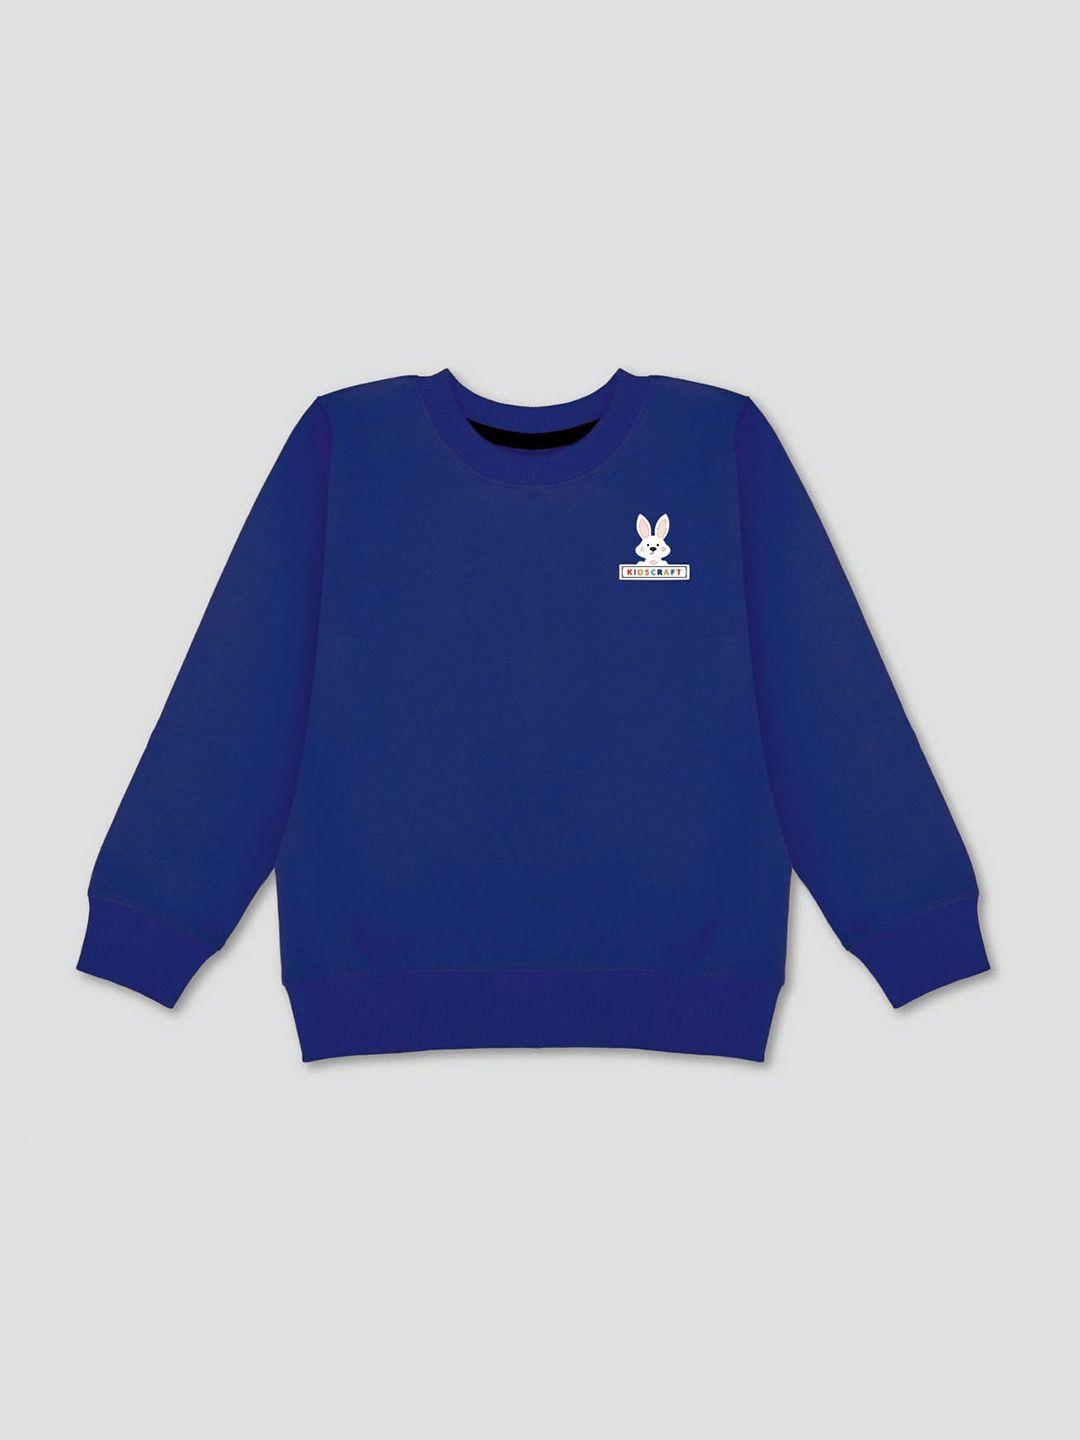 kidscraft-boys-blue-sweatshirt